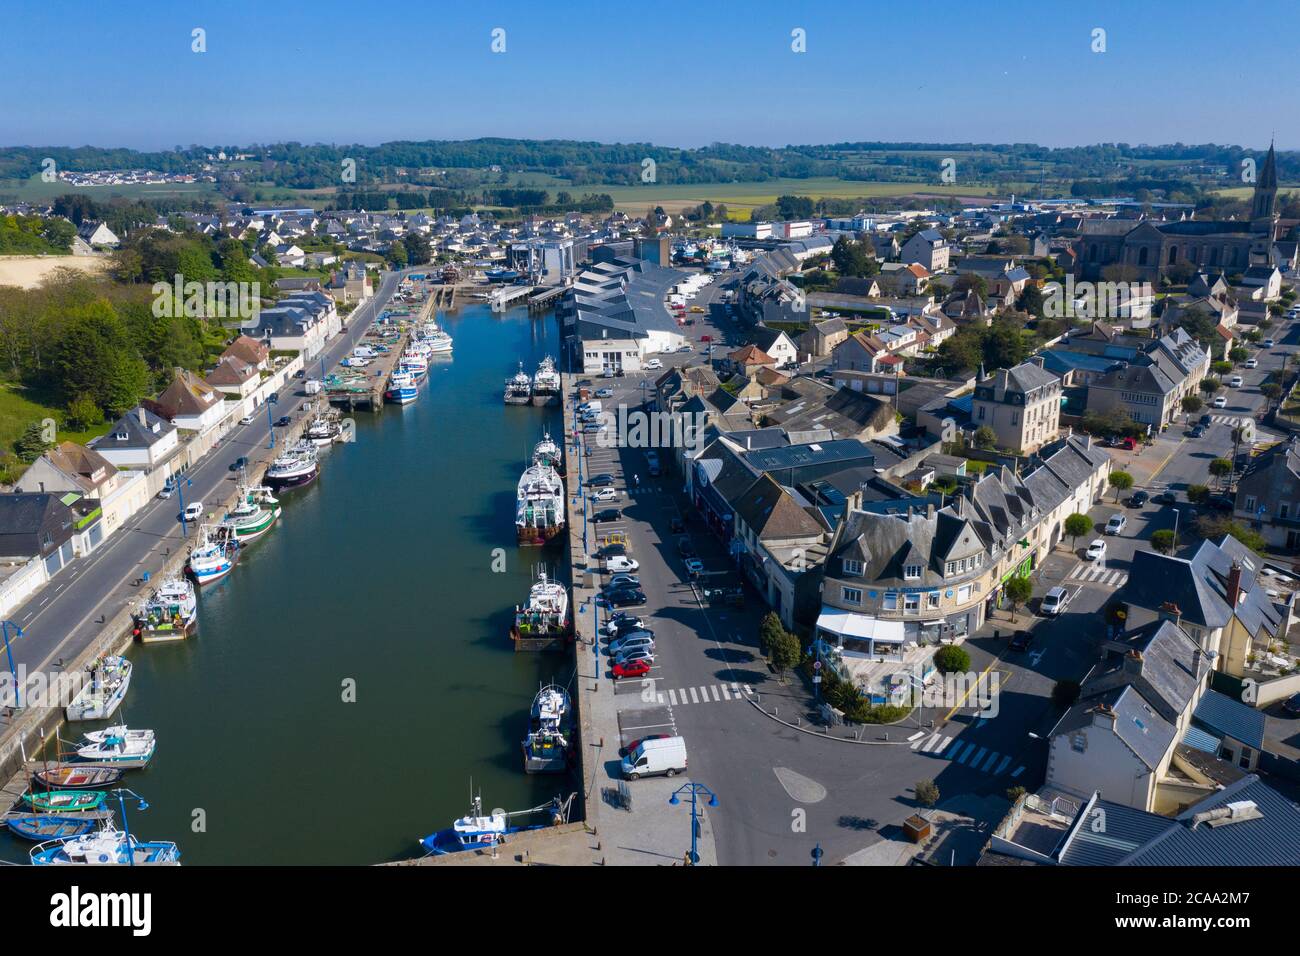 Vue aérienne de la ville de Port-en-Bessin et de son port. Saint-Martin est une commune française, située dans le département du Calvados et la région Basse-Normandie Banque D'Images